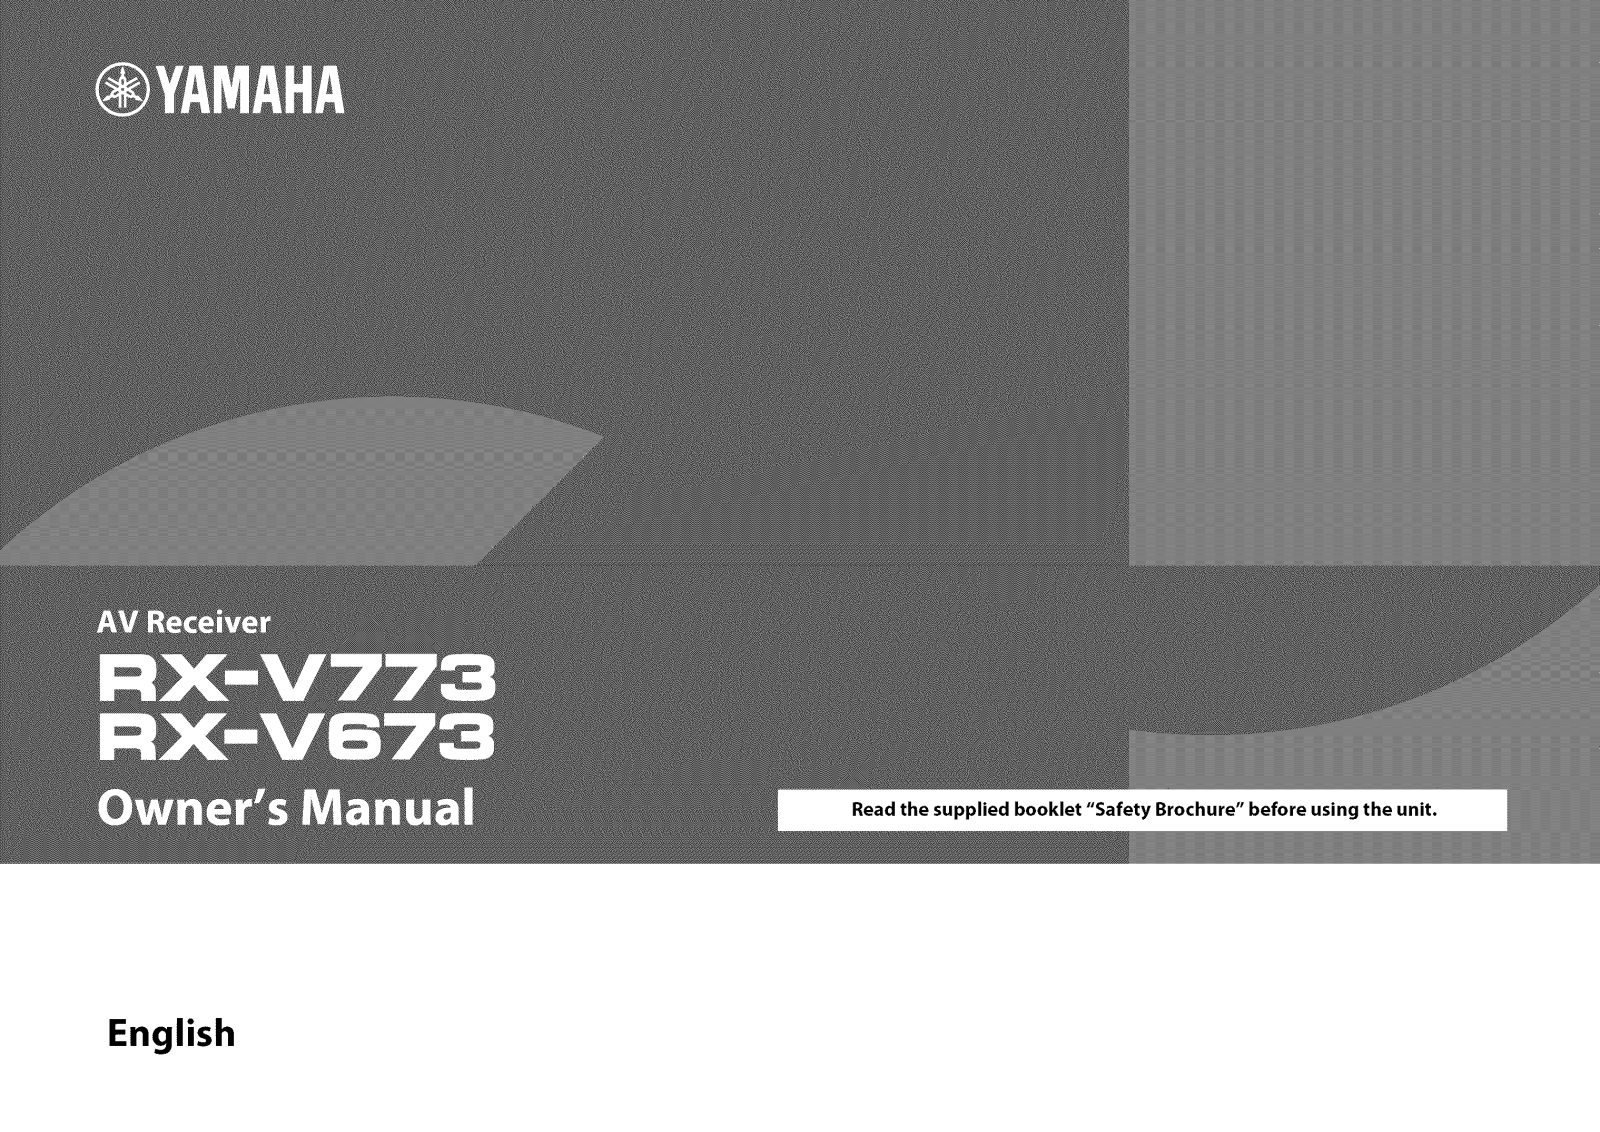 Yamaha RX-V773, RX-V673 Owner’s Manual